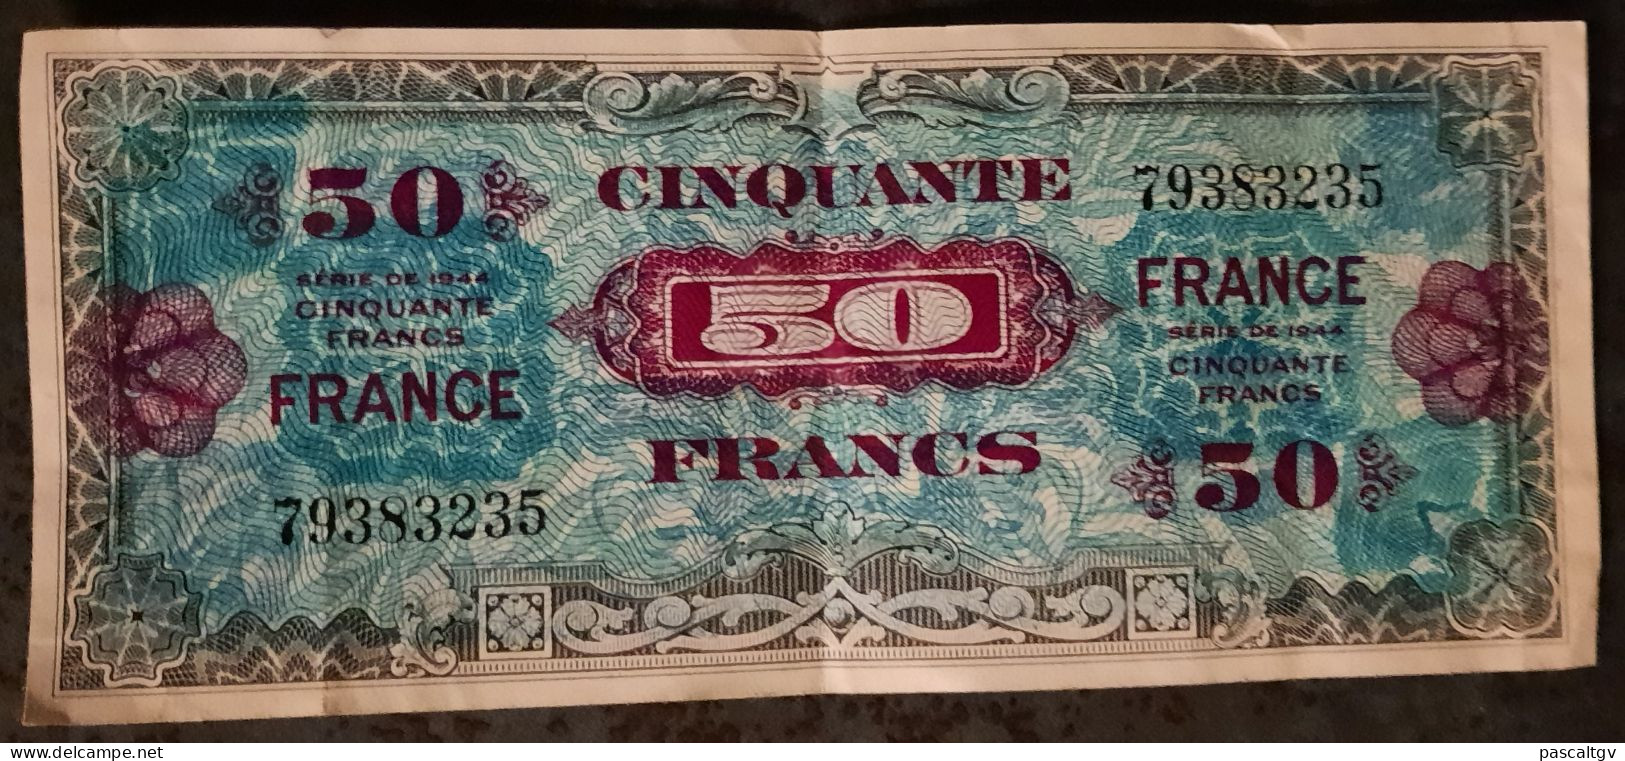 50 FRANCS - ** VERSO FRANCE - SERIE DE 1944 - N° 79383235 - Billet Du Débarquement ** - 1945 Verso Francés